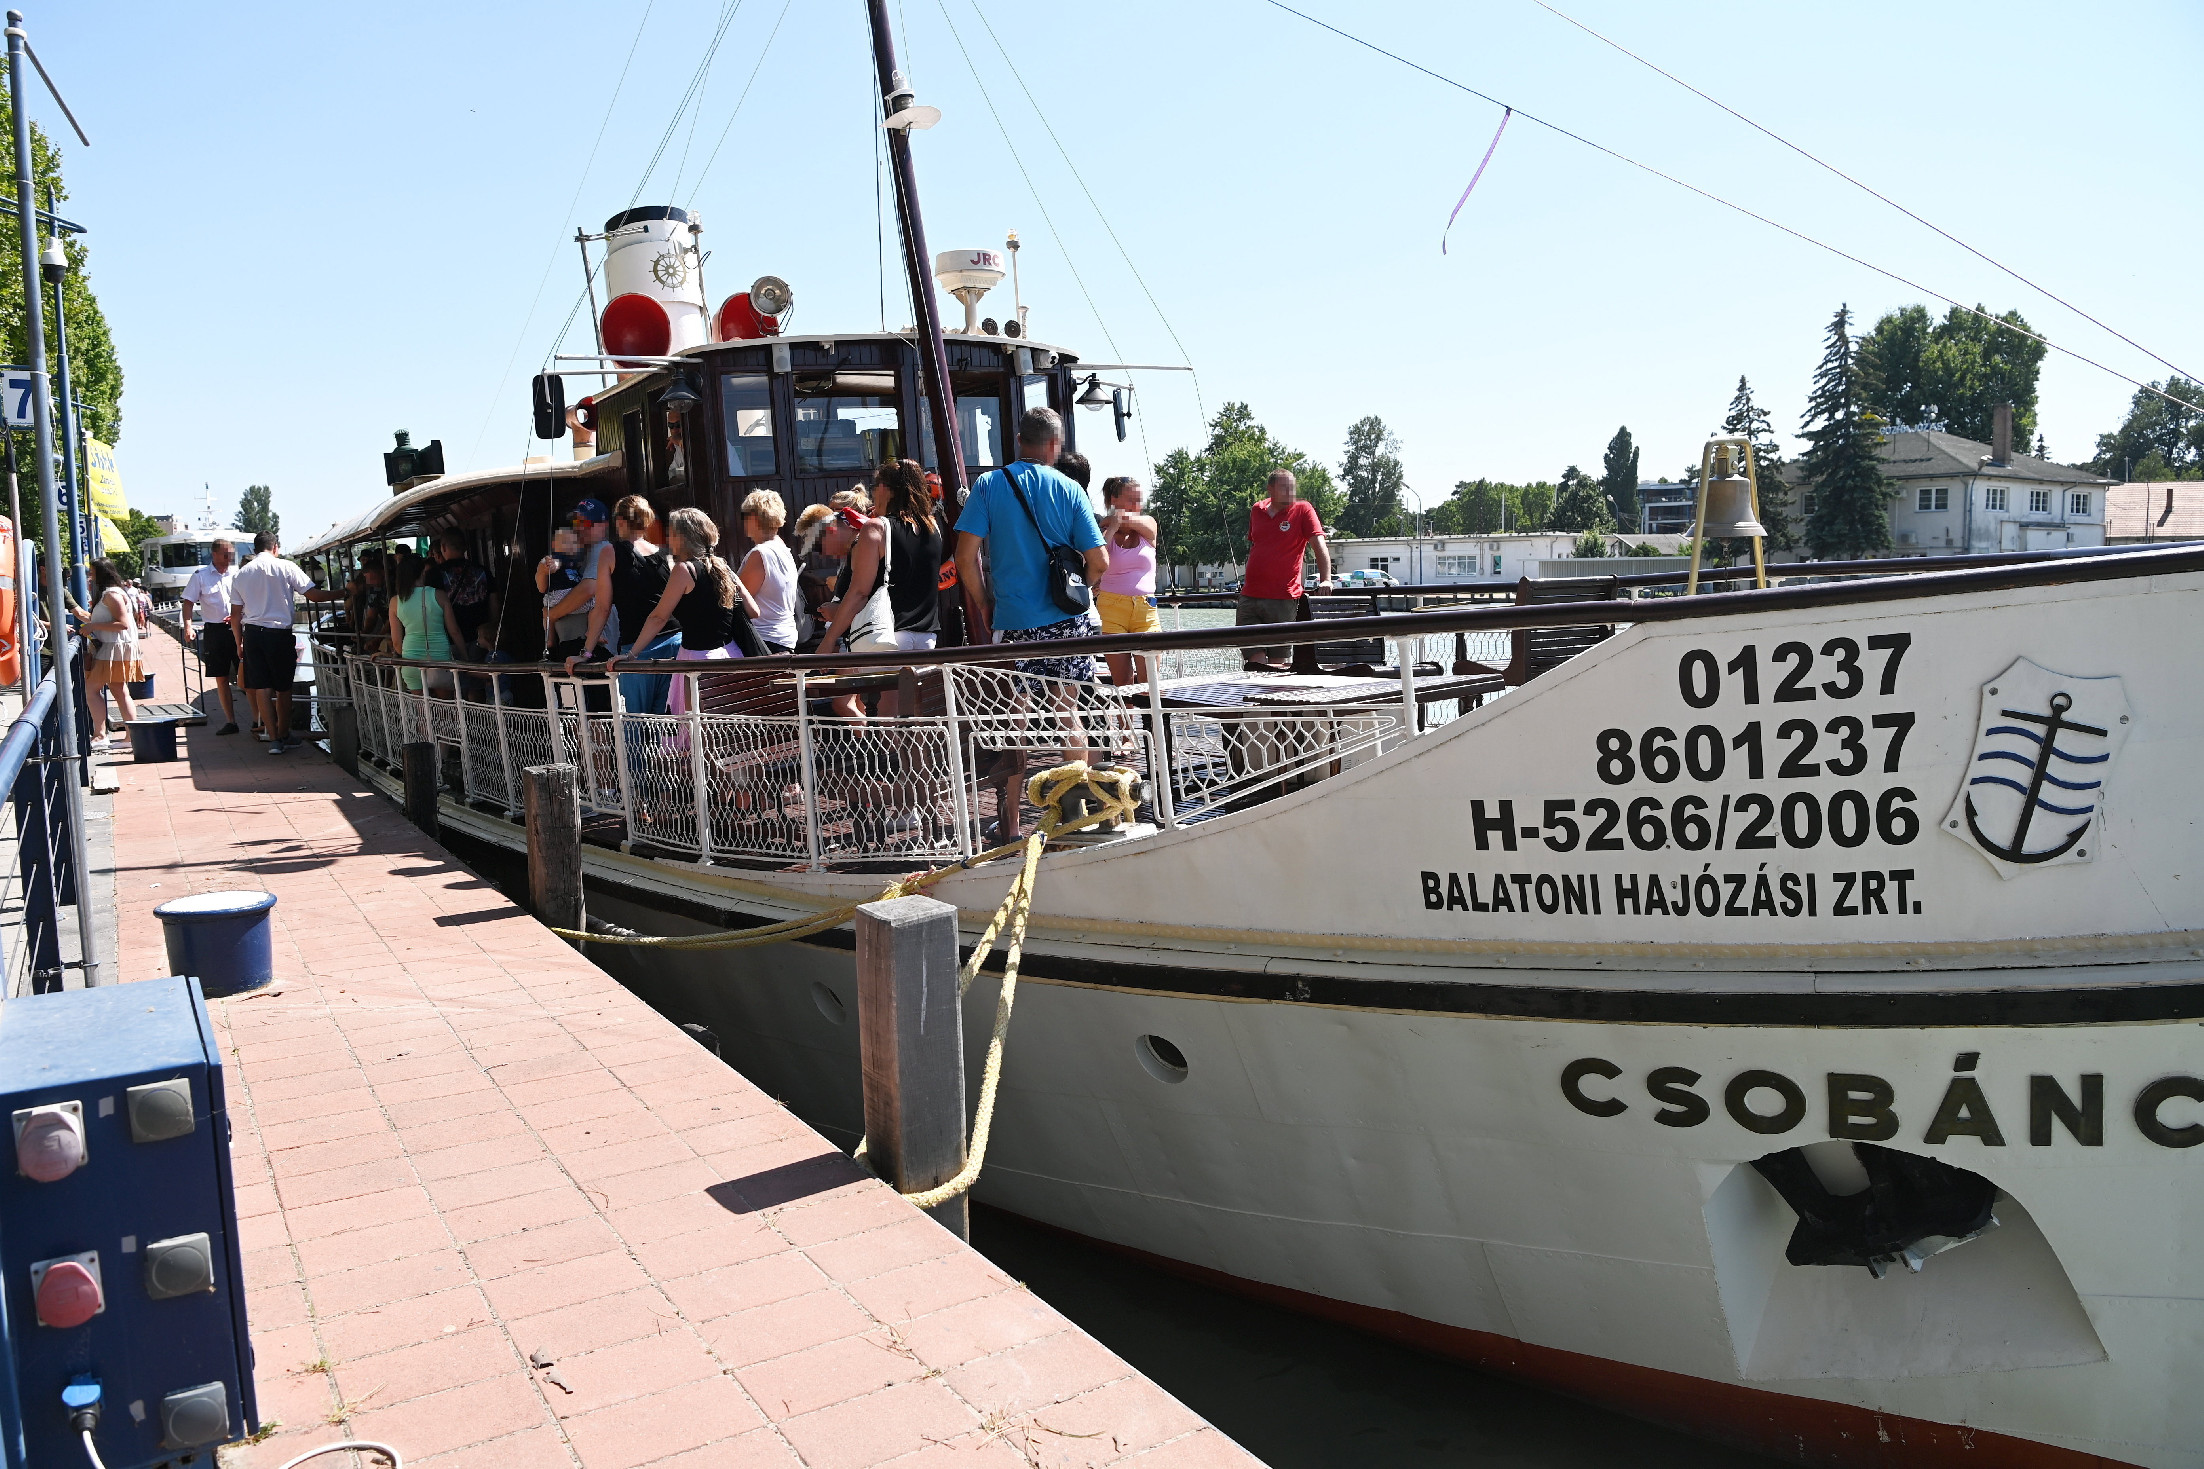 Történelmi dátumot üdvözöl a Balaton: elindult a 177. hajózási szezon